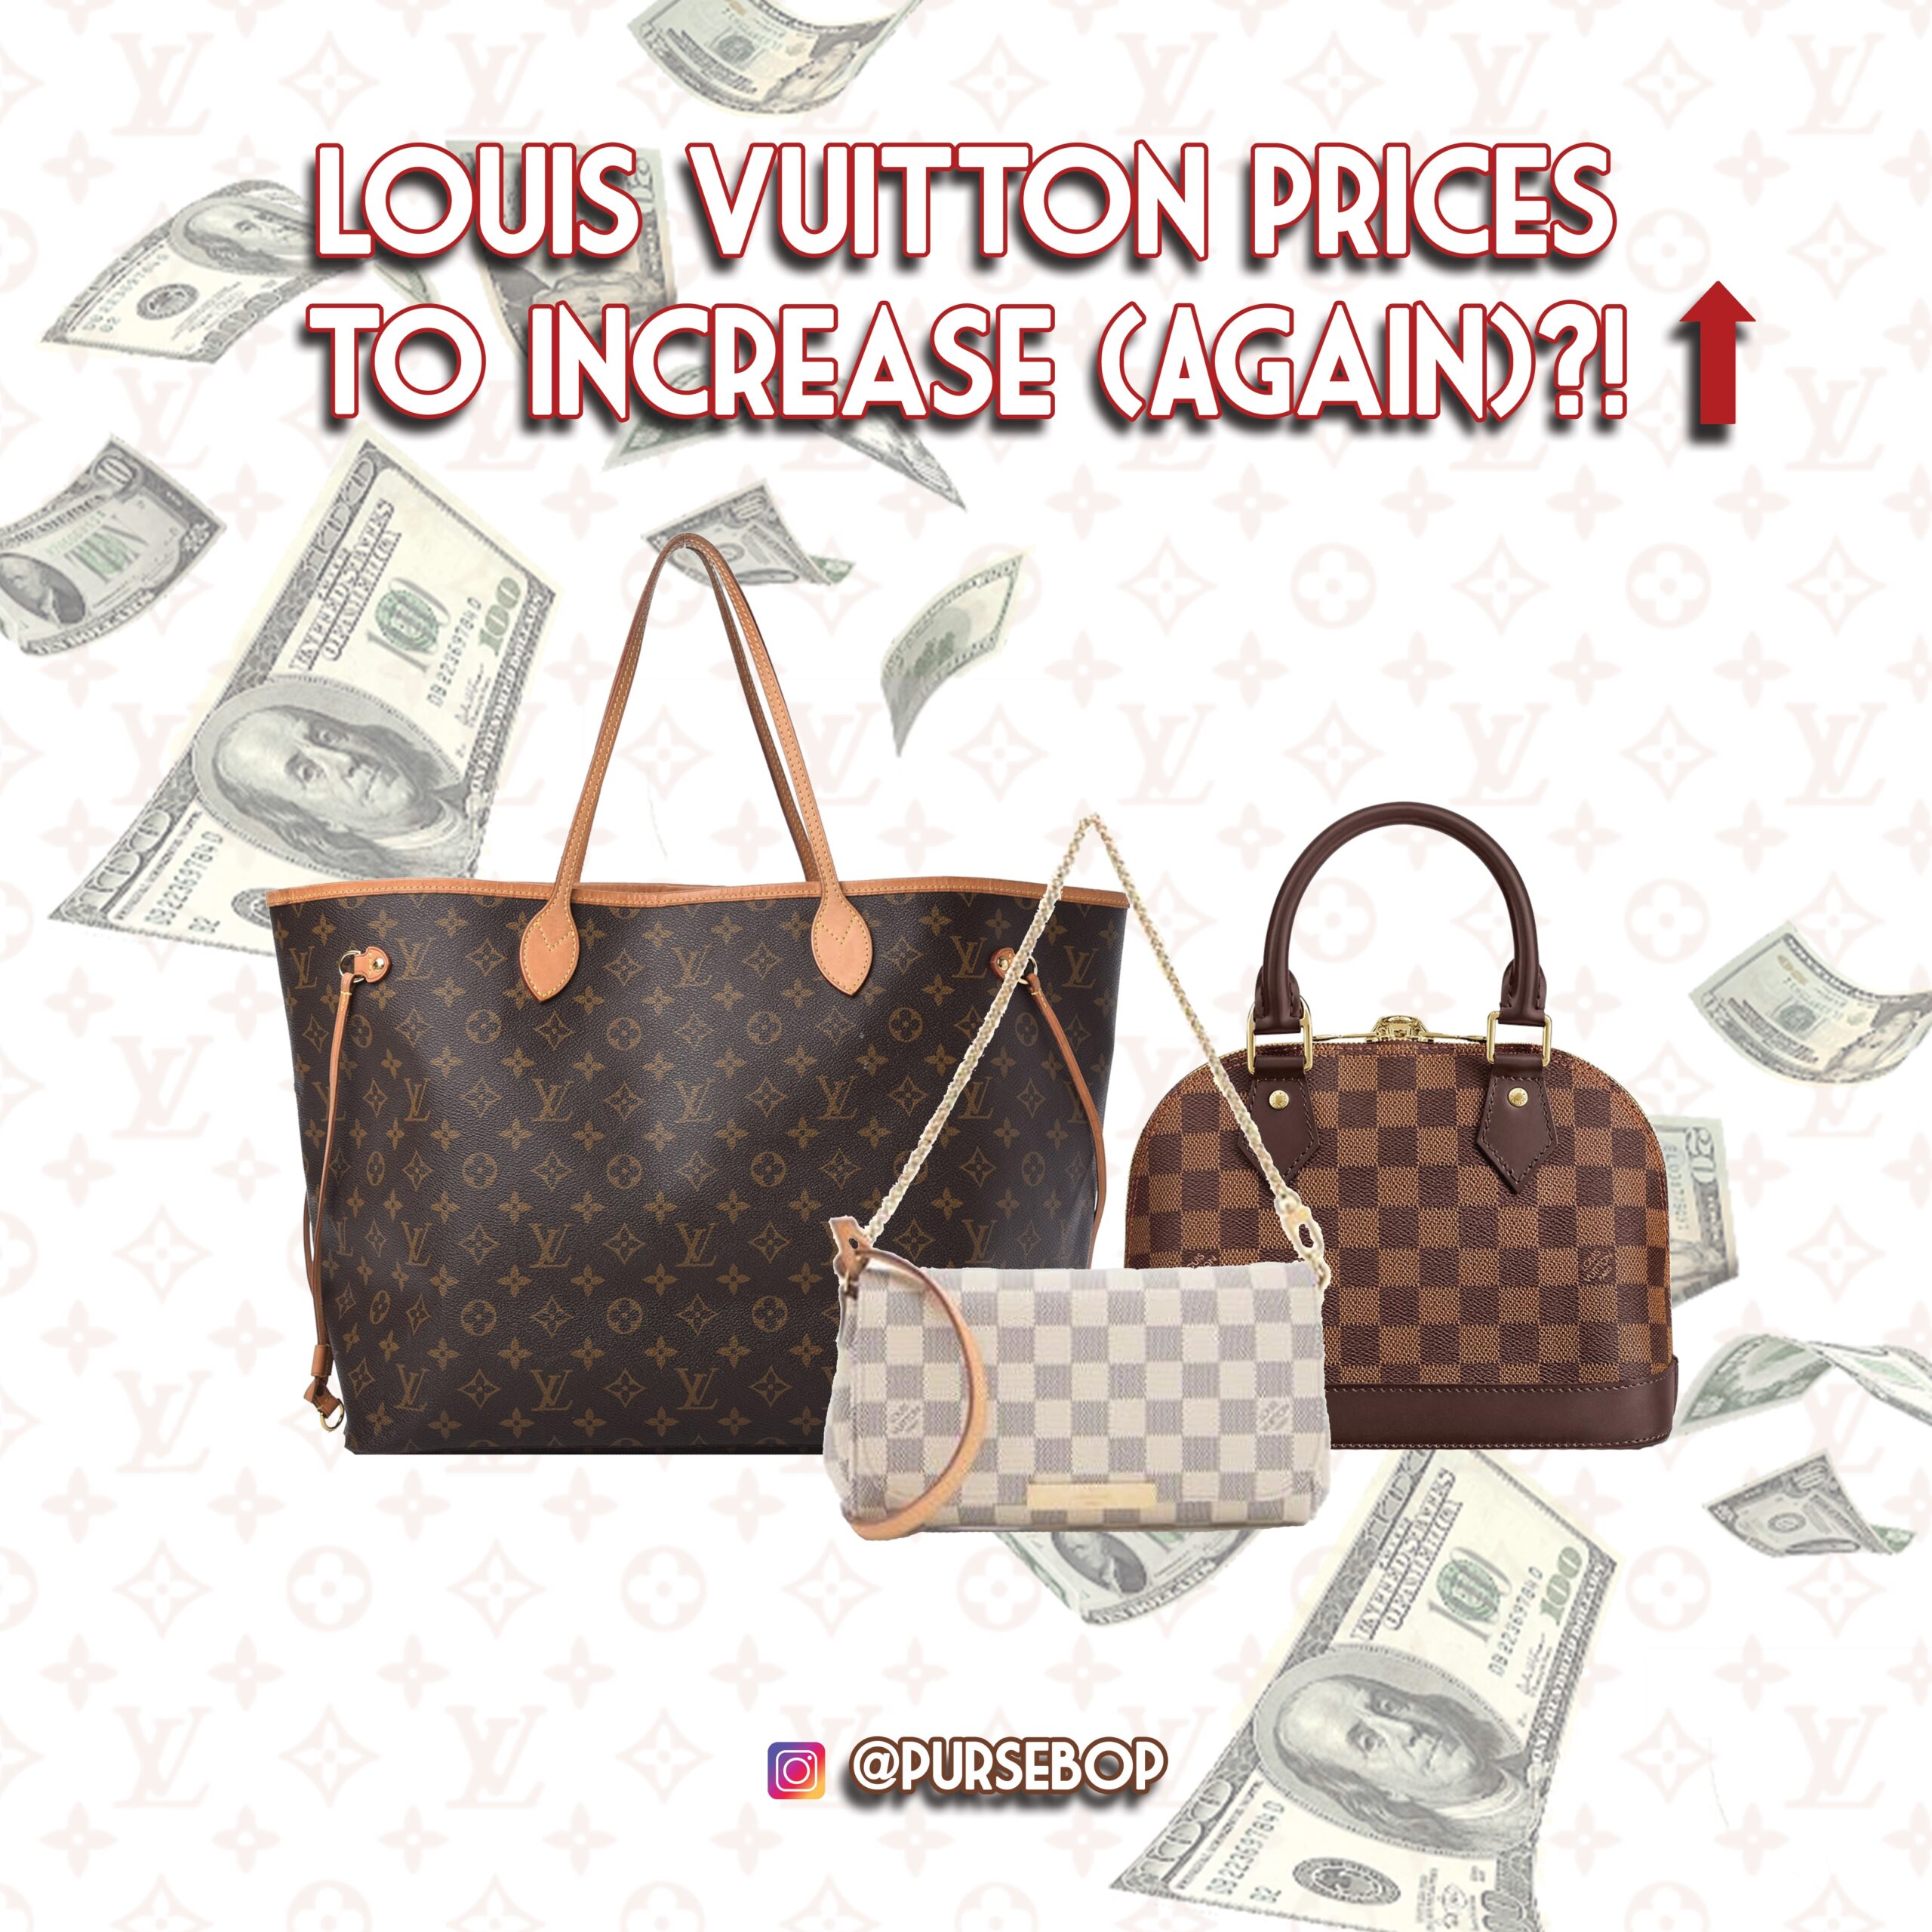 Meet Louis Vuitton's 'Millionaire' Speedy